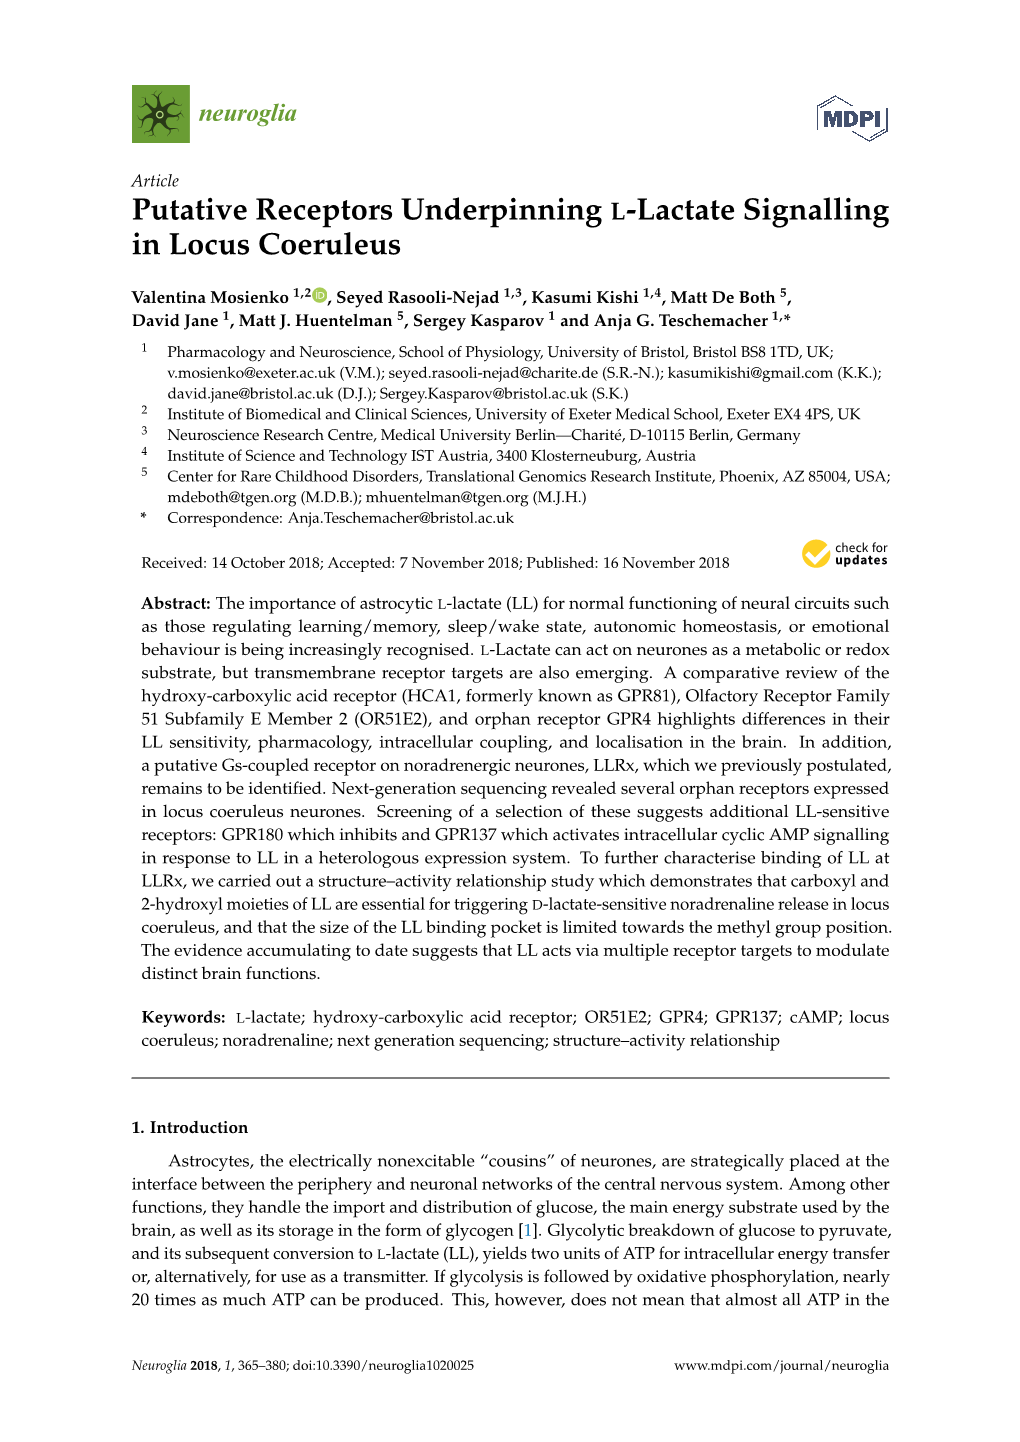 Putative Receptors Underpinning L-Lactate Signalling in Locus Coeruleus